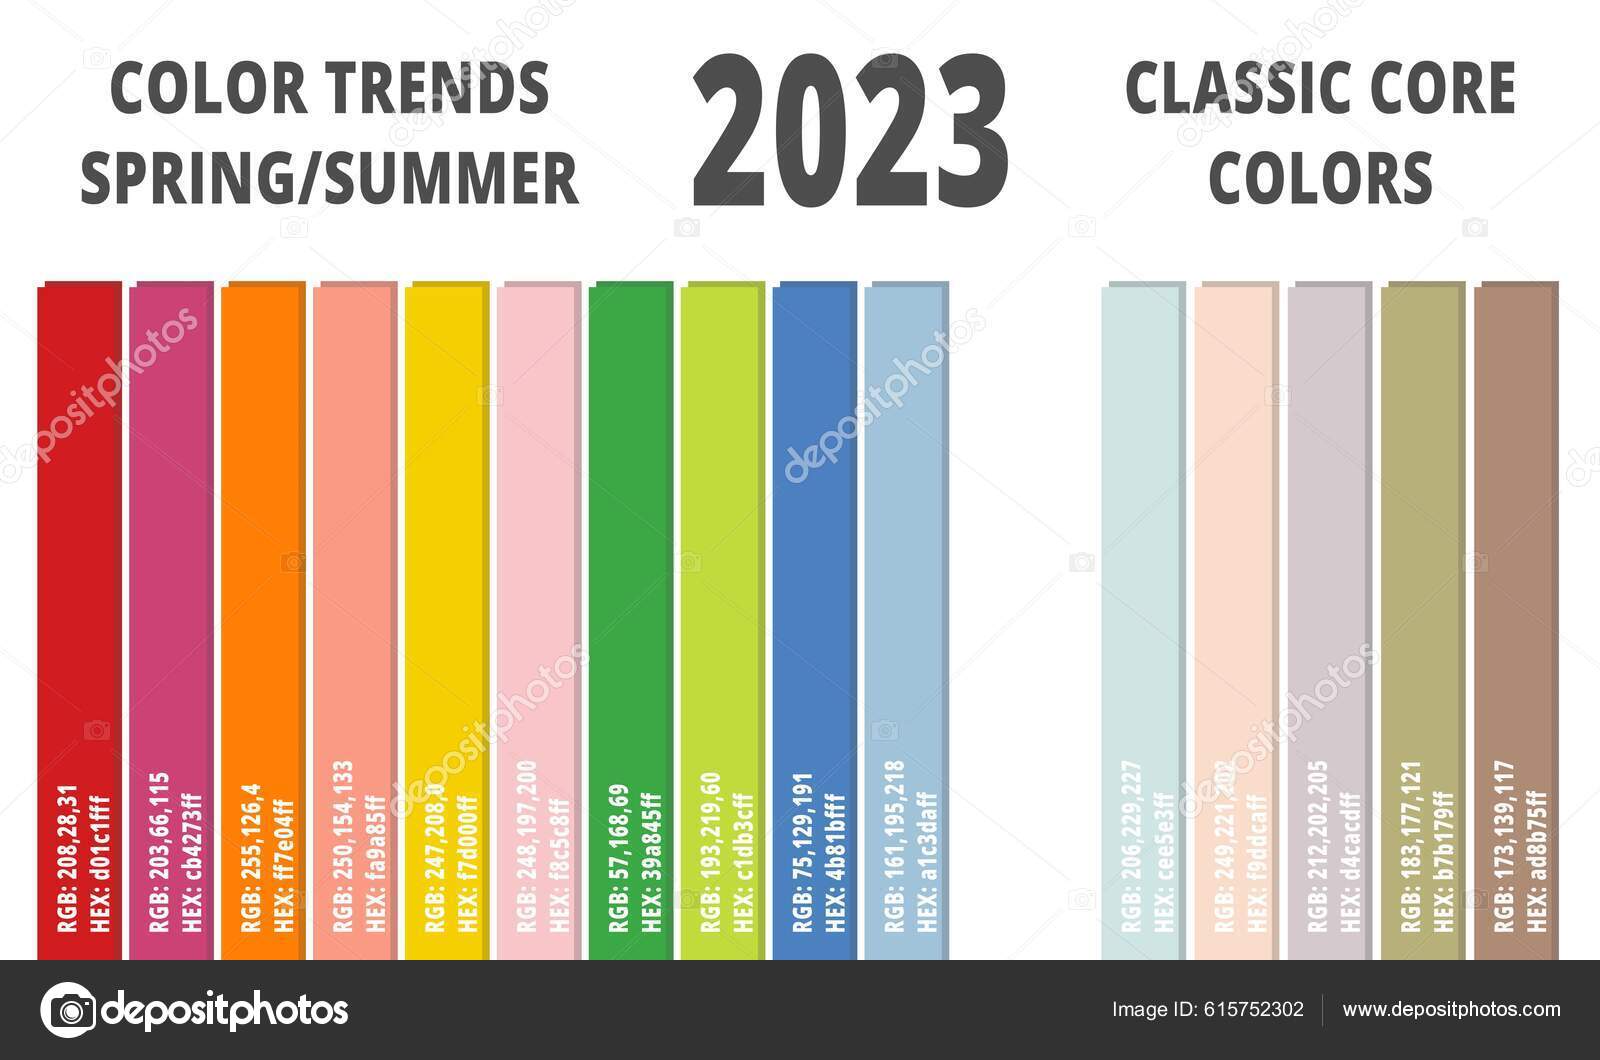 Verão 2023: O guia das tendências da temporada, Moda